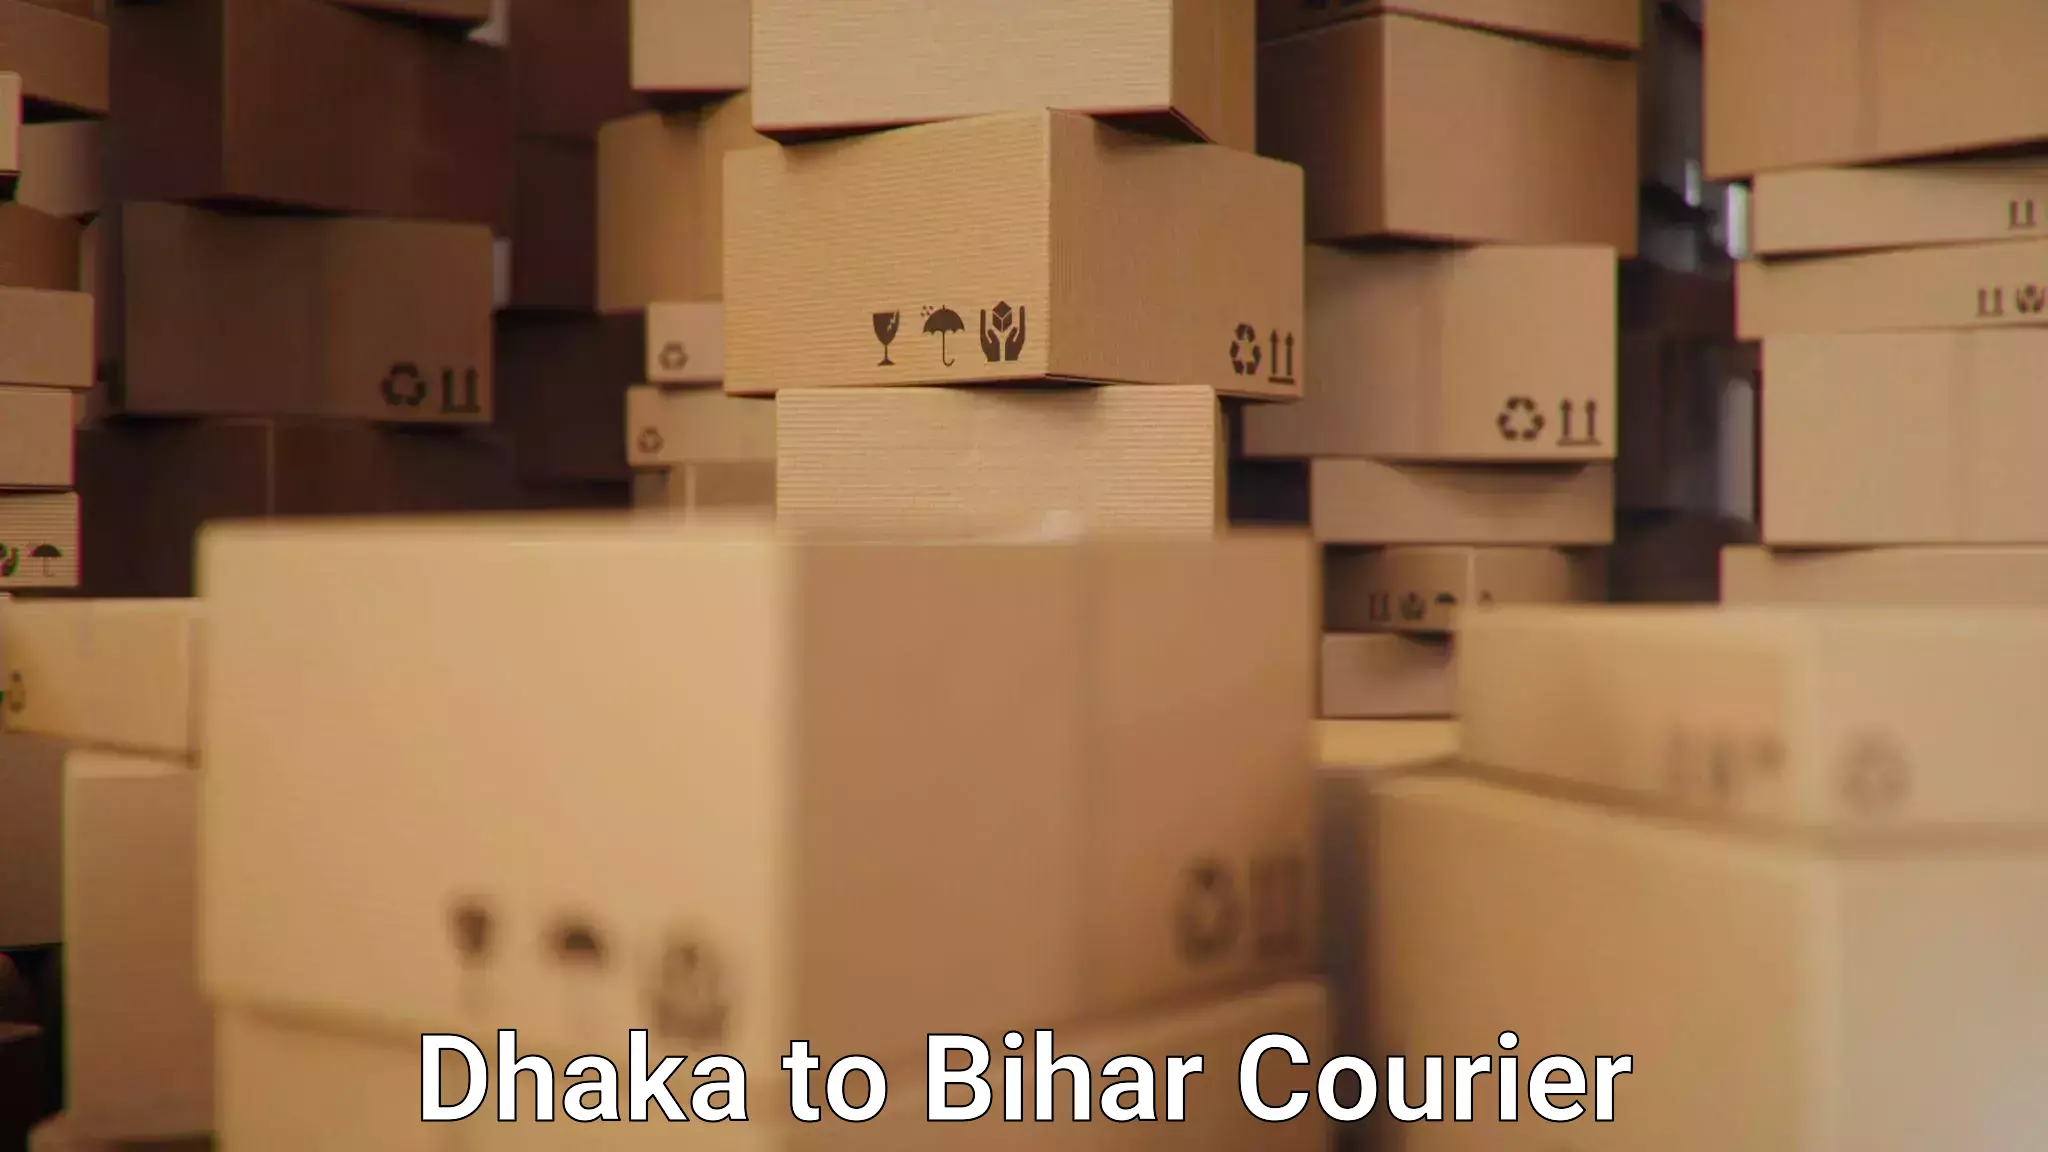 Nationwide shipping capabilities Dhaka to Bihar